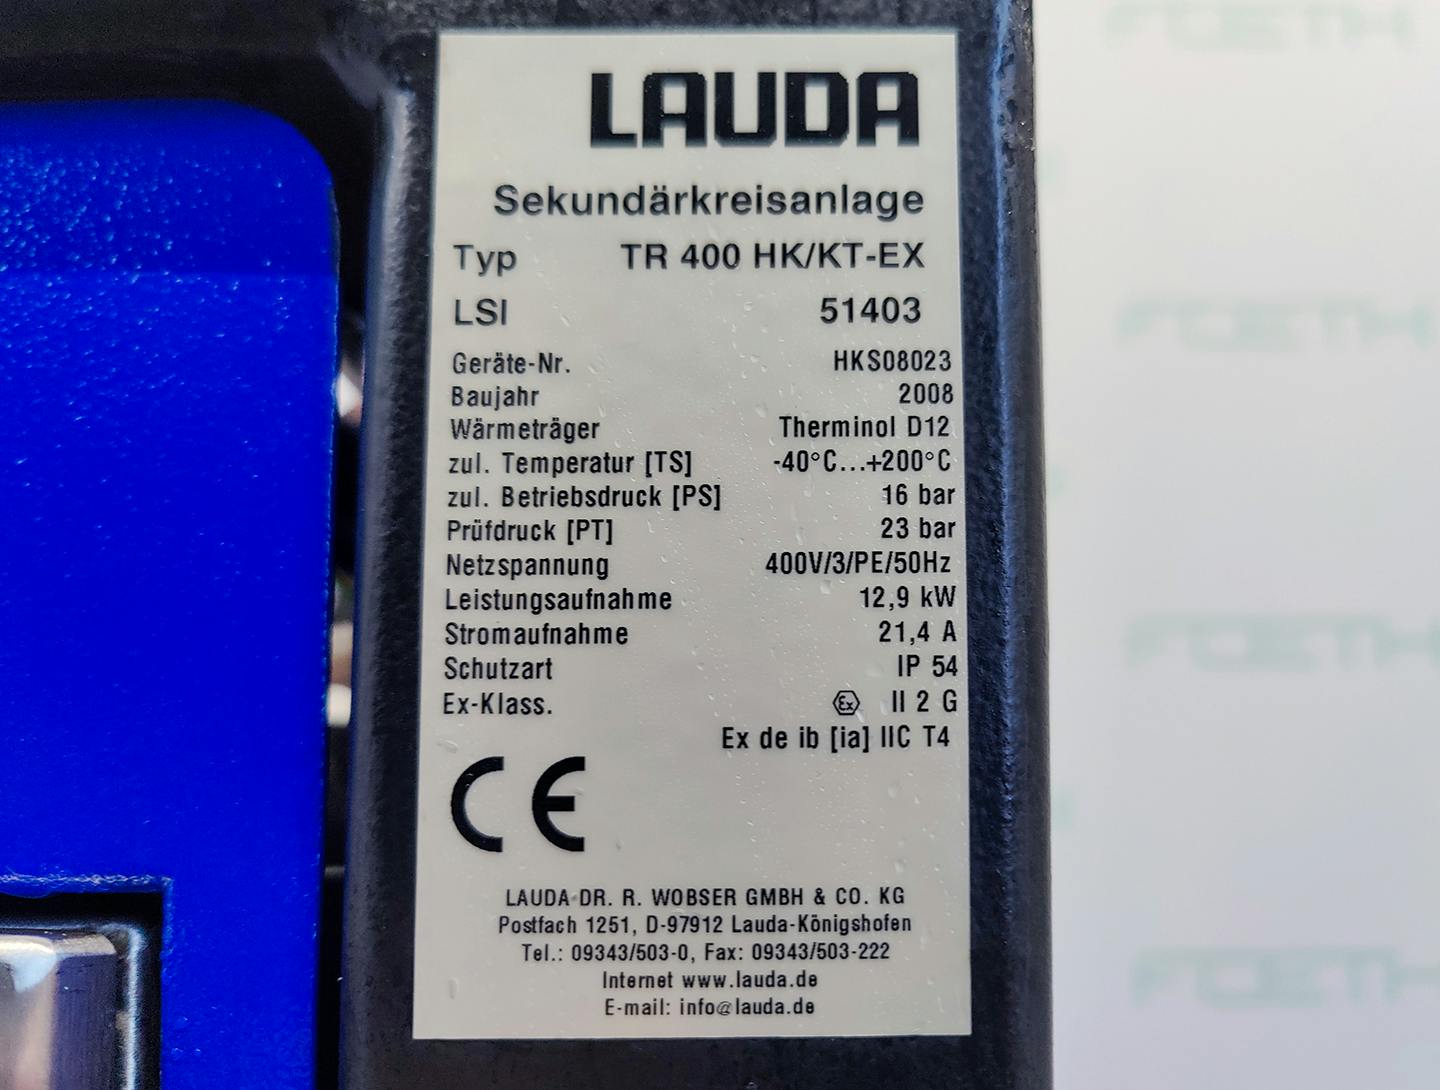 Lauda TR400 HK/KT-EX "secondary circuit system" - Urzadzenie termostatyczne - image 6